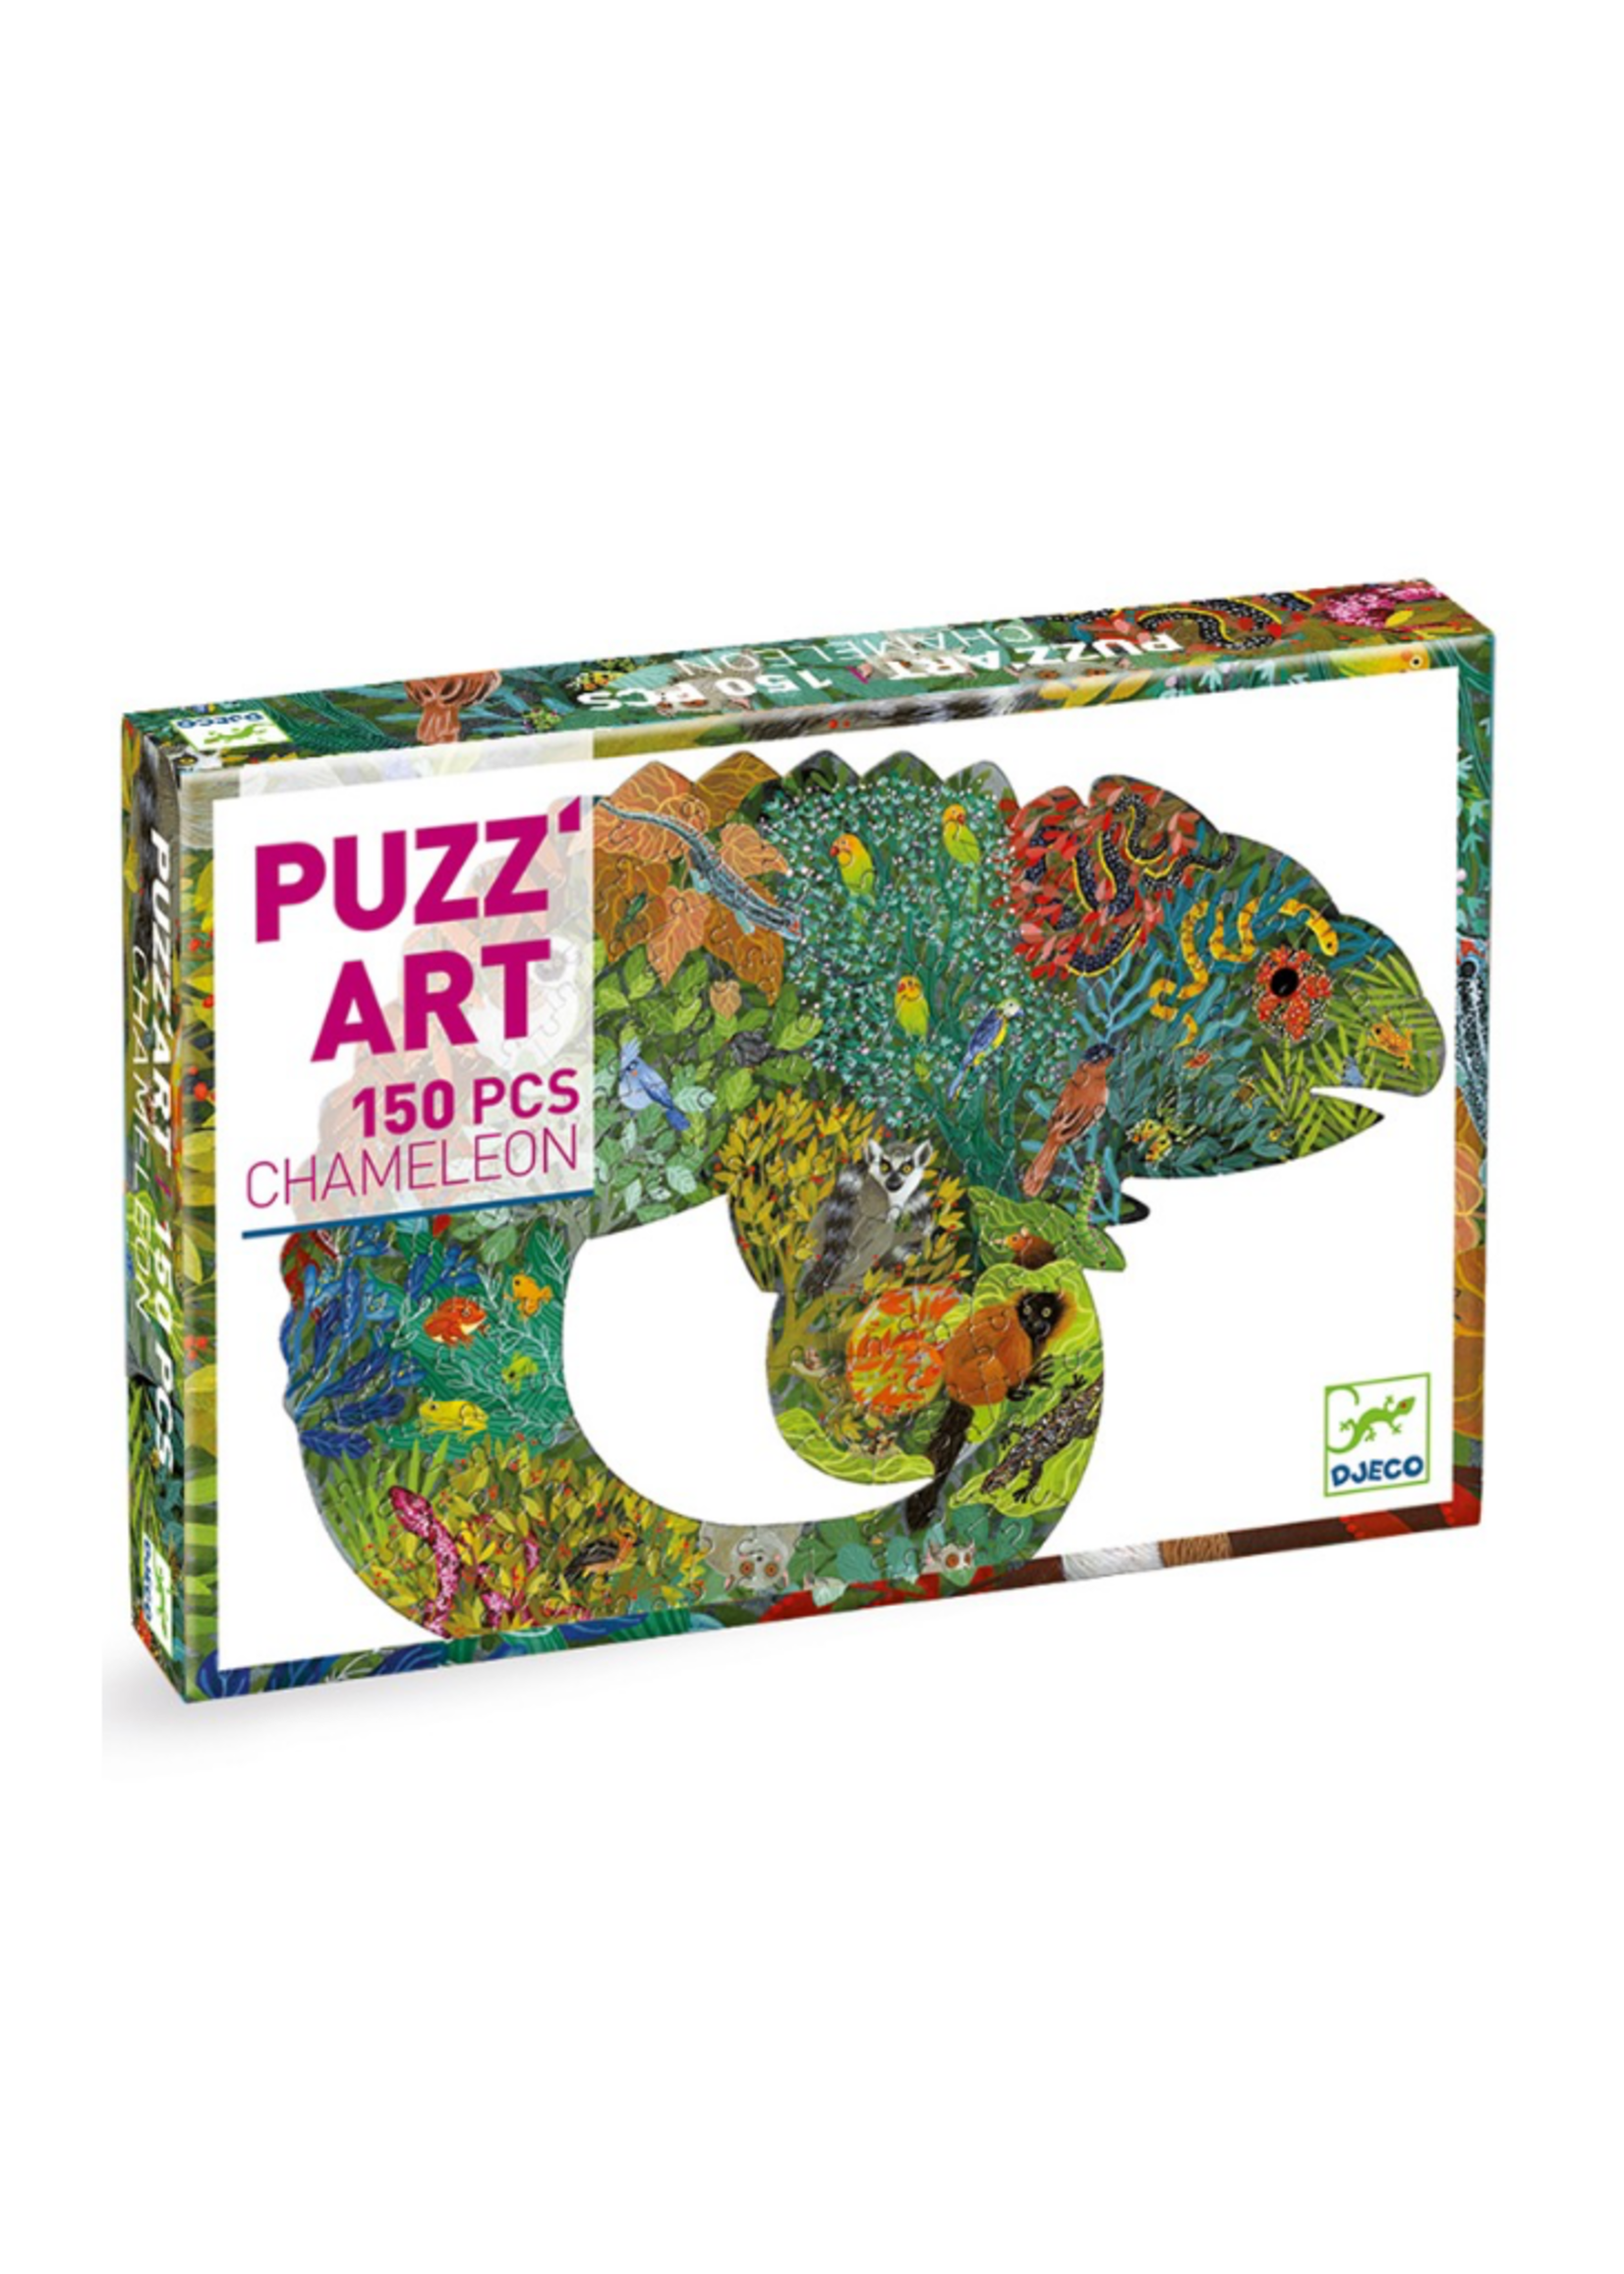 Djeco Puzz'Art Chameleon Puzzle - 150 Pieces